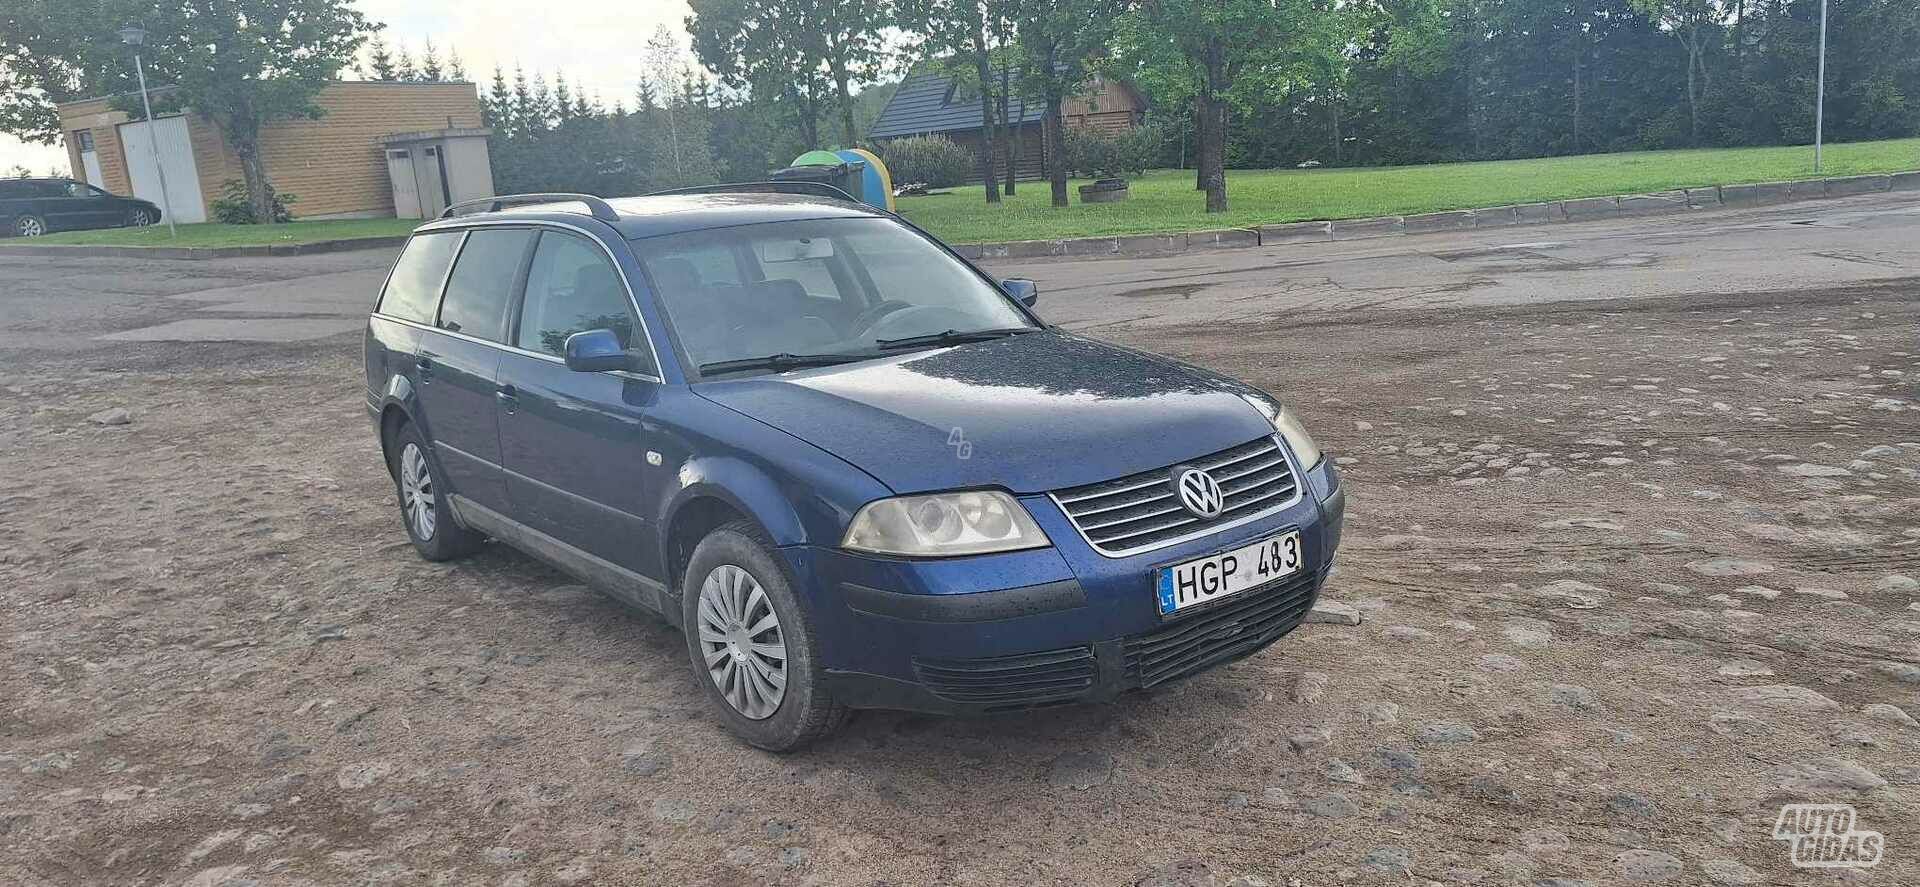 Volkswagen Passat 2003 y Wagon